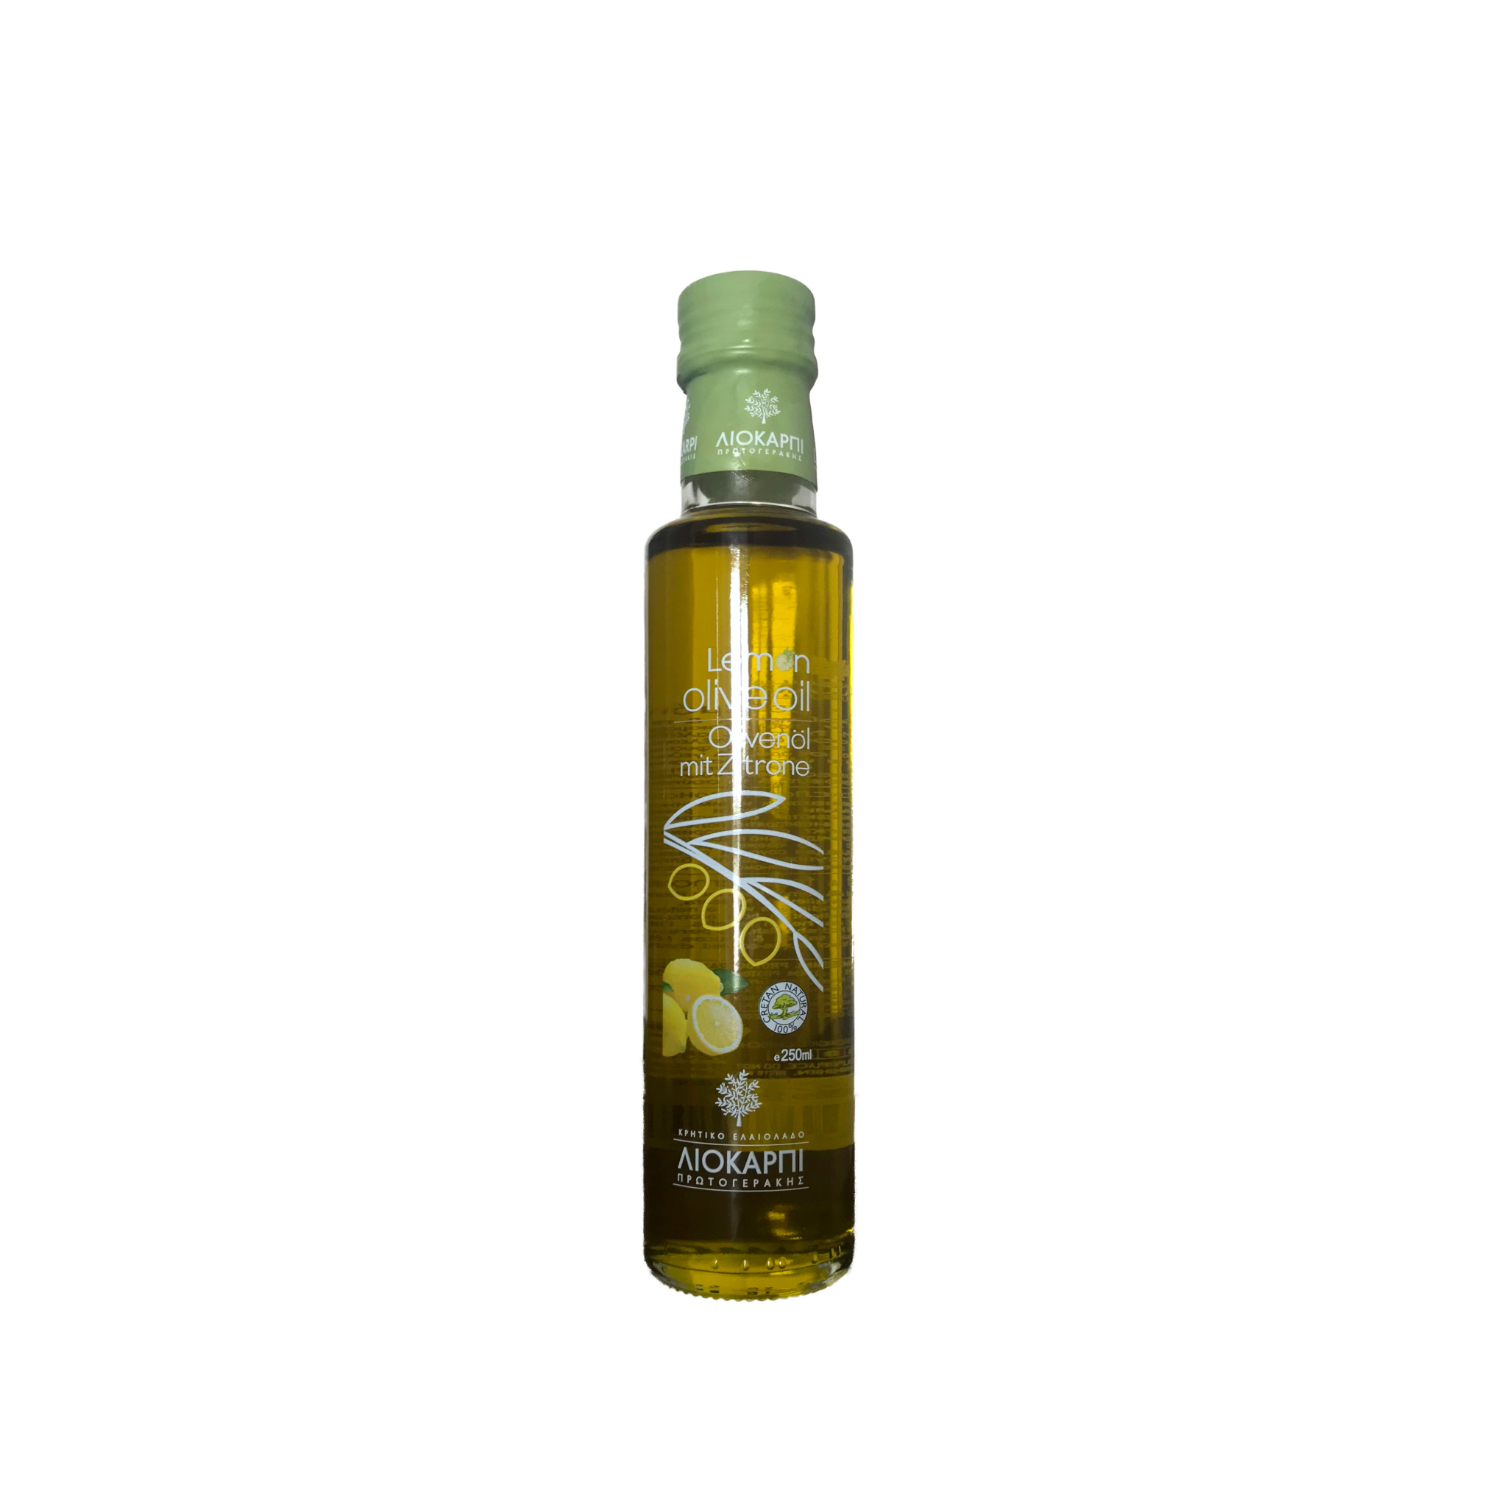 Liokarpi・Kretisches Olivenöl mit Zitrone verfeinert・250 ml